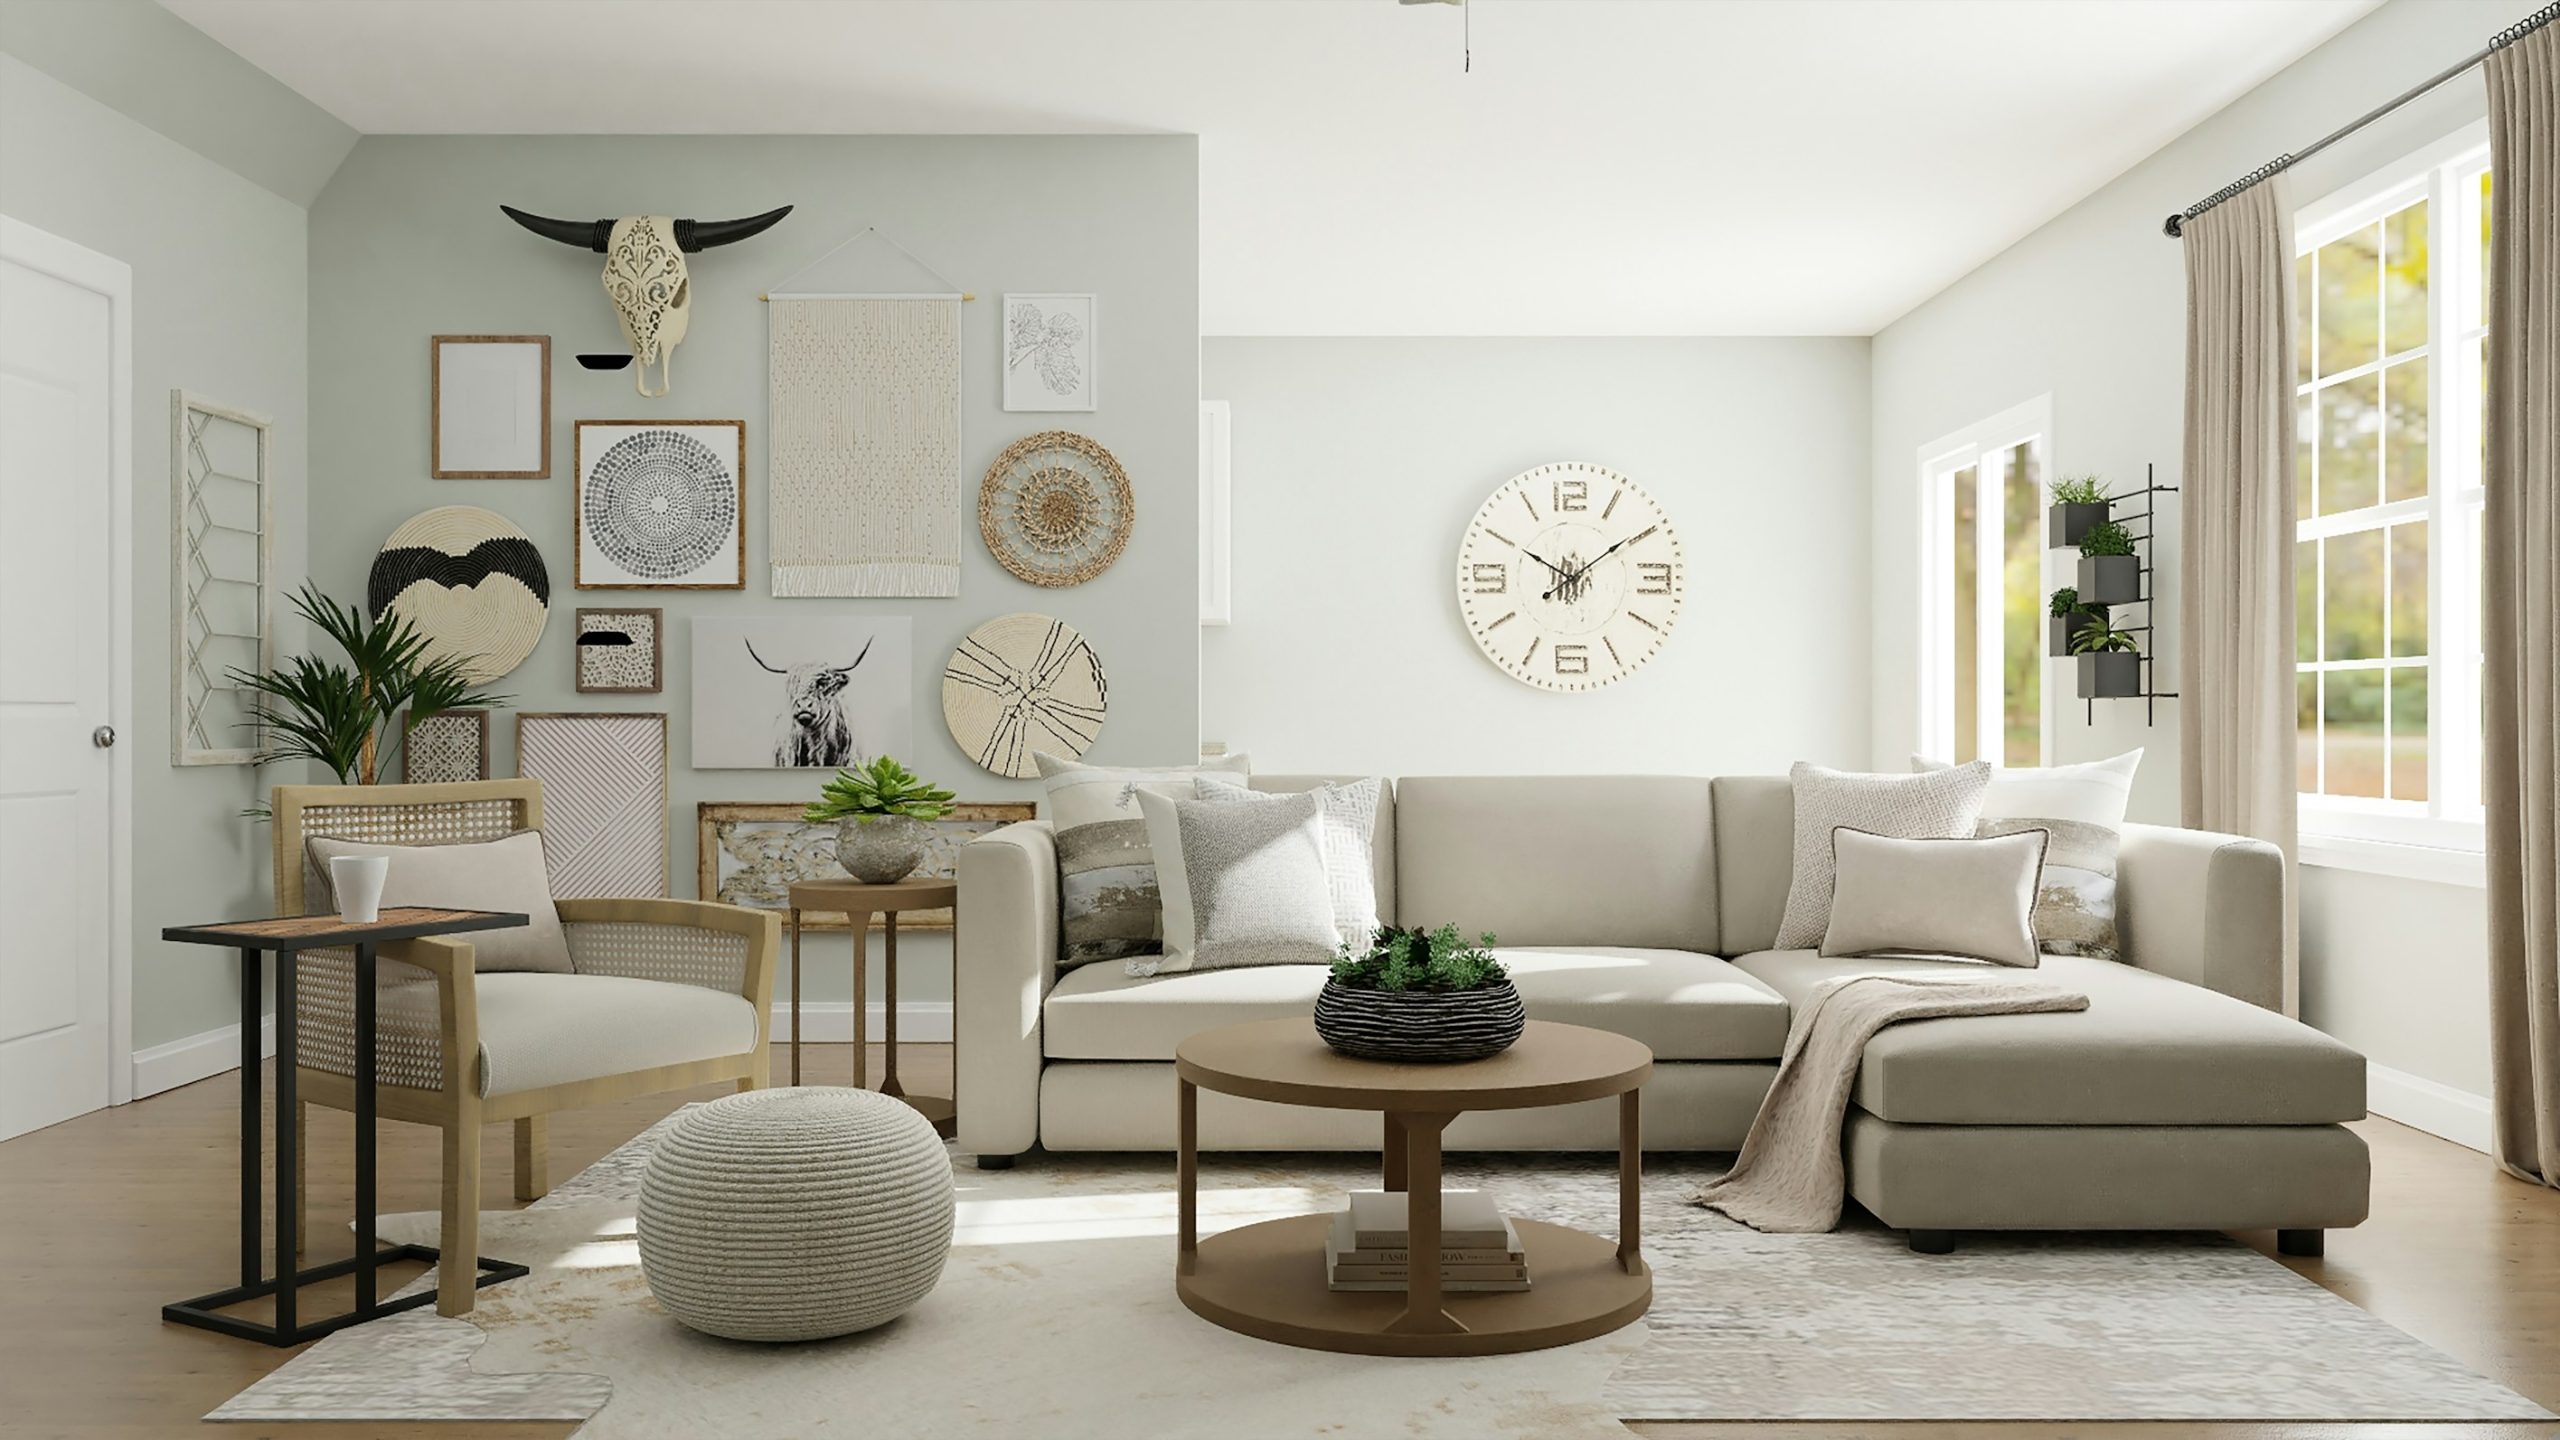 Why Innovative Home Decor Ideas Transform Living Spaces - living space, Living room, ideas, home decor